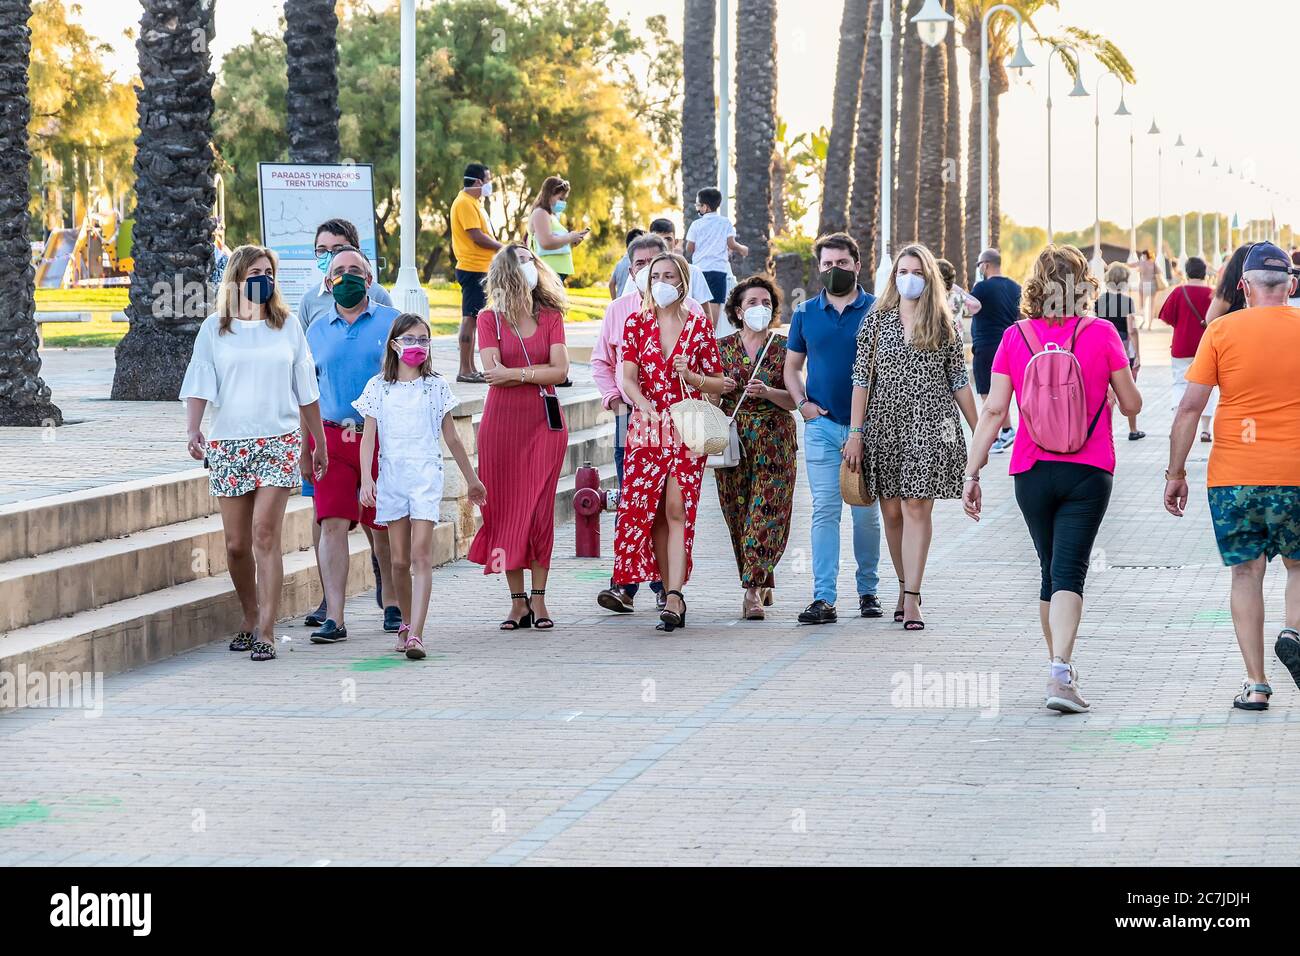 Huelva, Spagna - 3 giugno 2020: Persone che camminano dalla passeggiata Islantilla al tramonto indossando maschera protettiva a causa di covid-19. Foto Stock